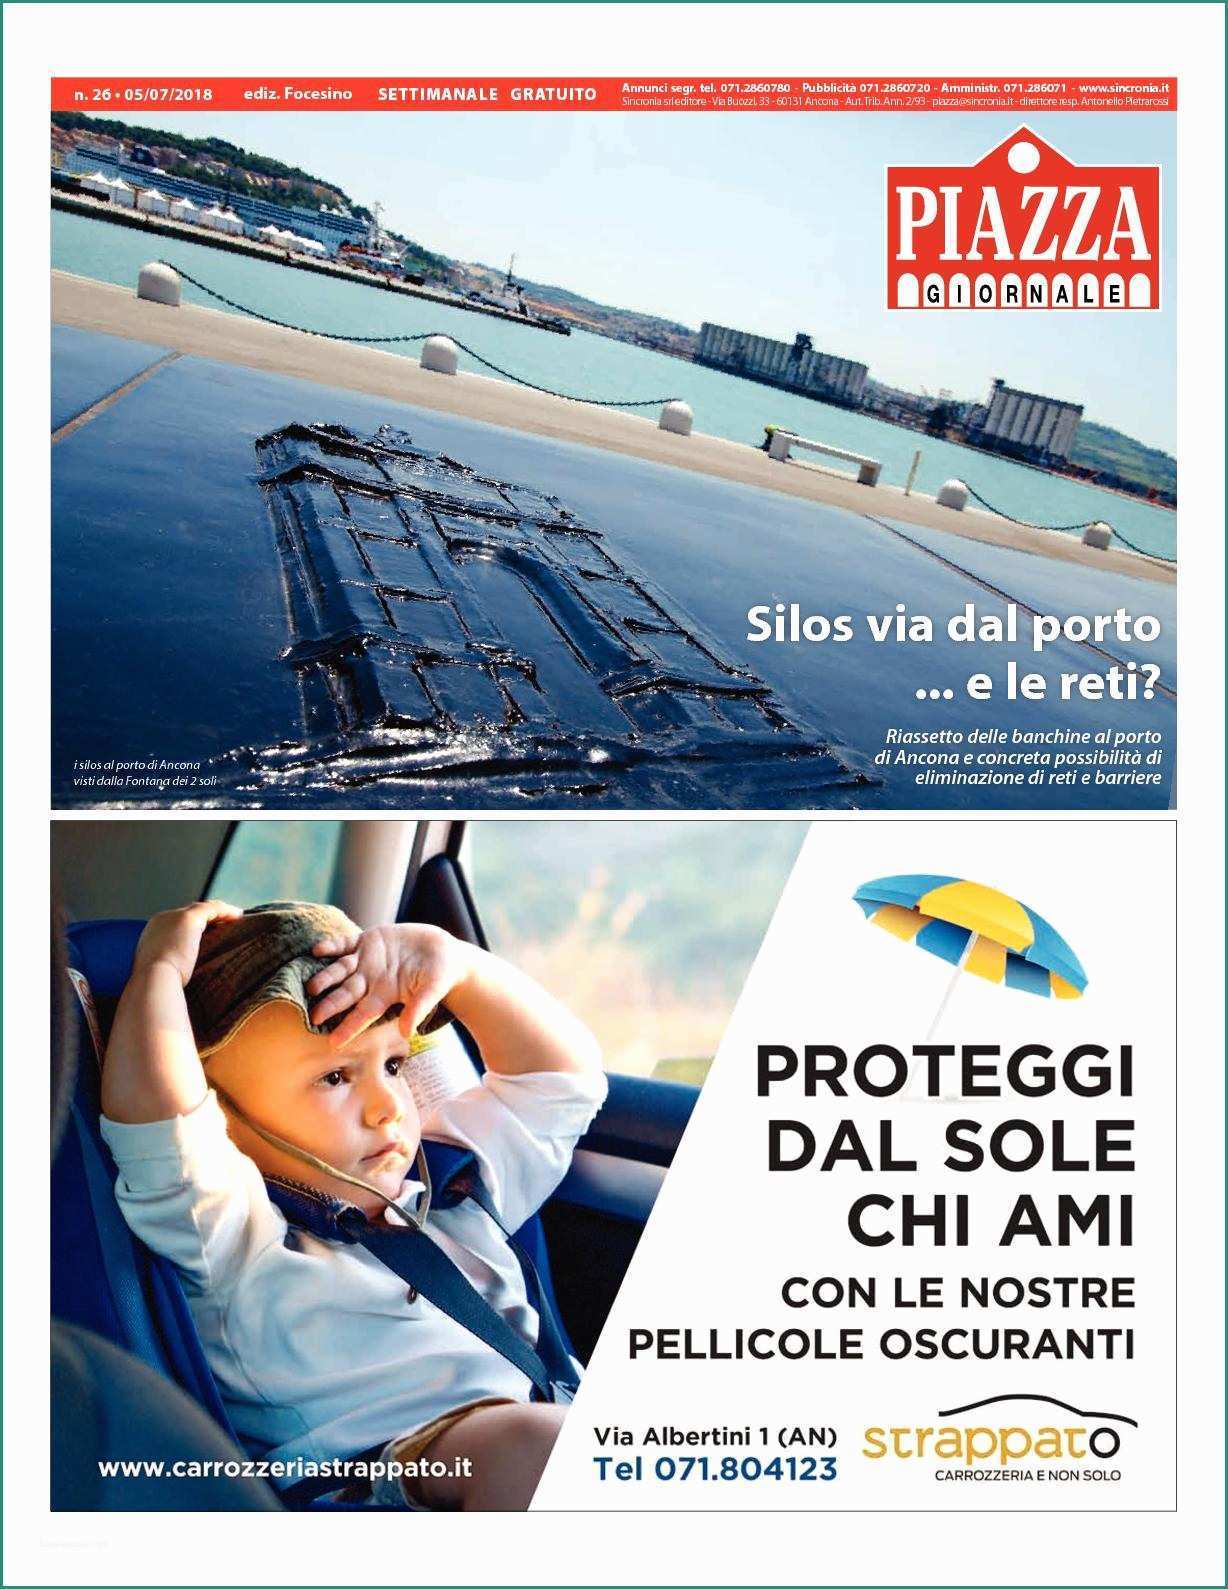 Cingoli Per Motocoltivatore Prezzo E Calaméo Piazza Fe26 2018